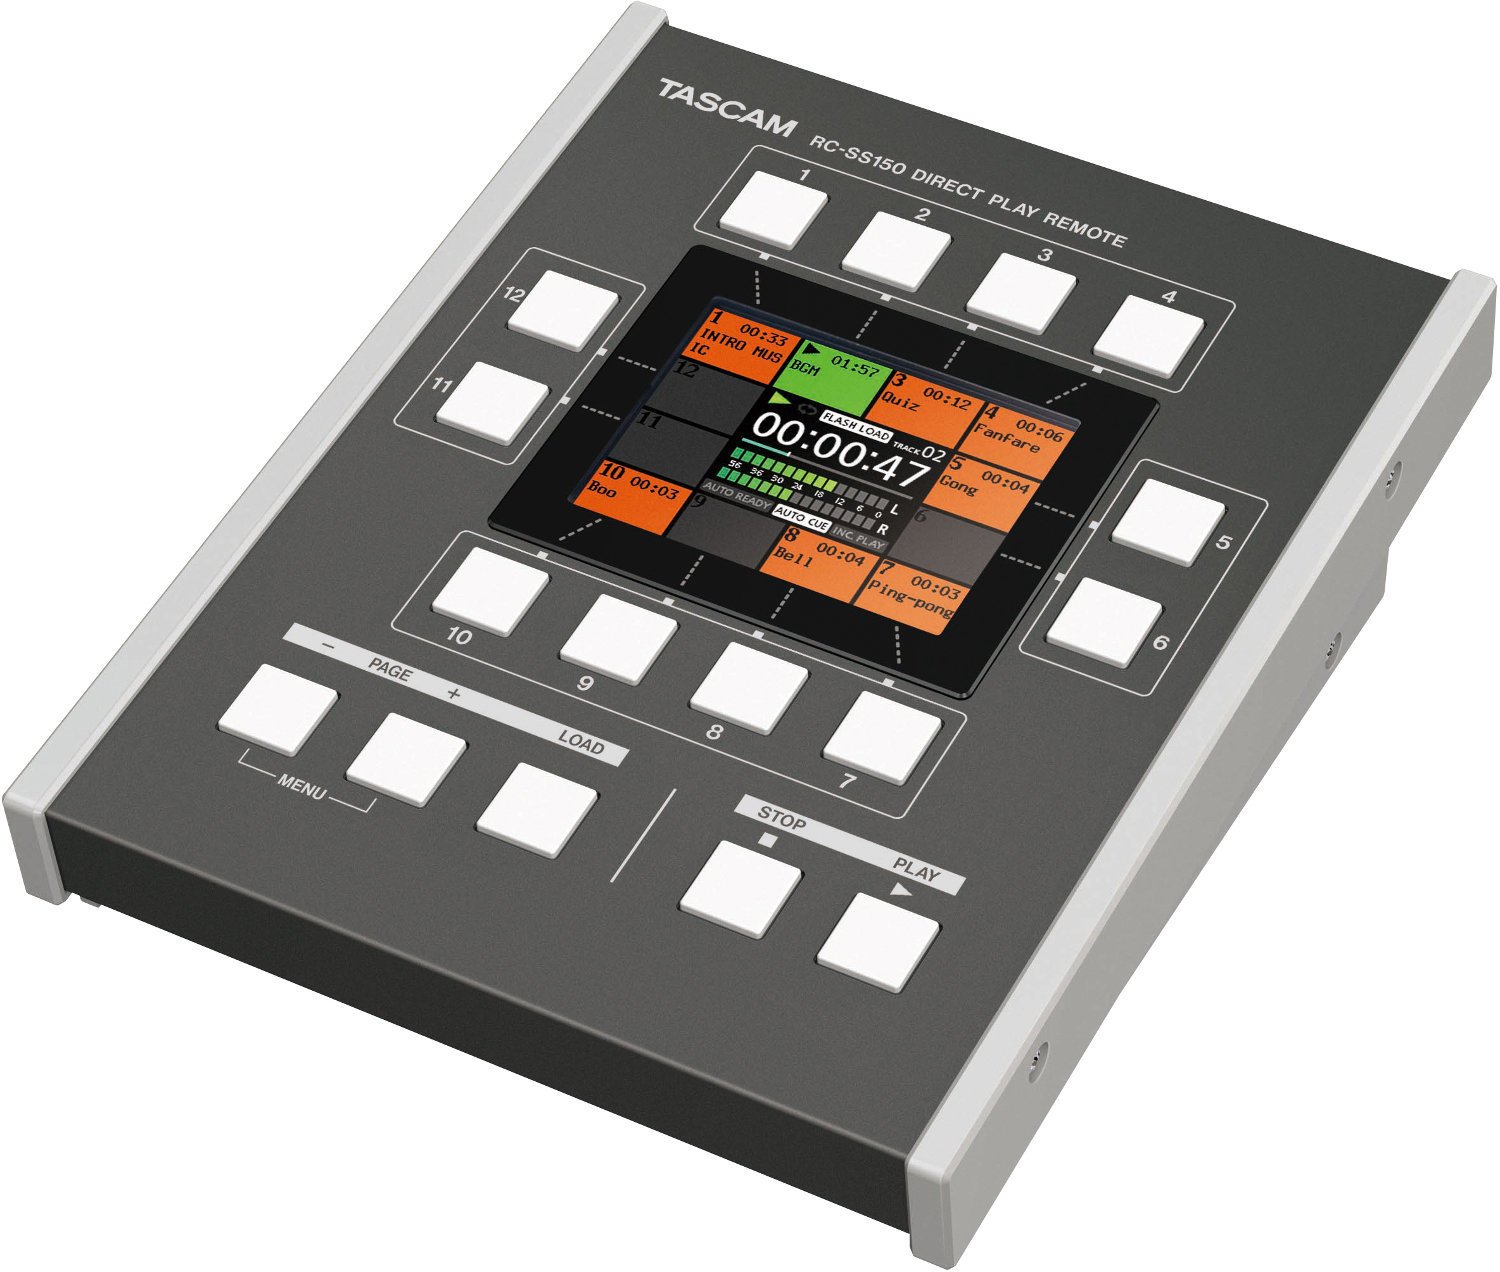 Fjernbetjening til digitale optagere Tascam RC-SS150 Remote control